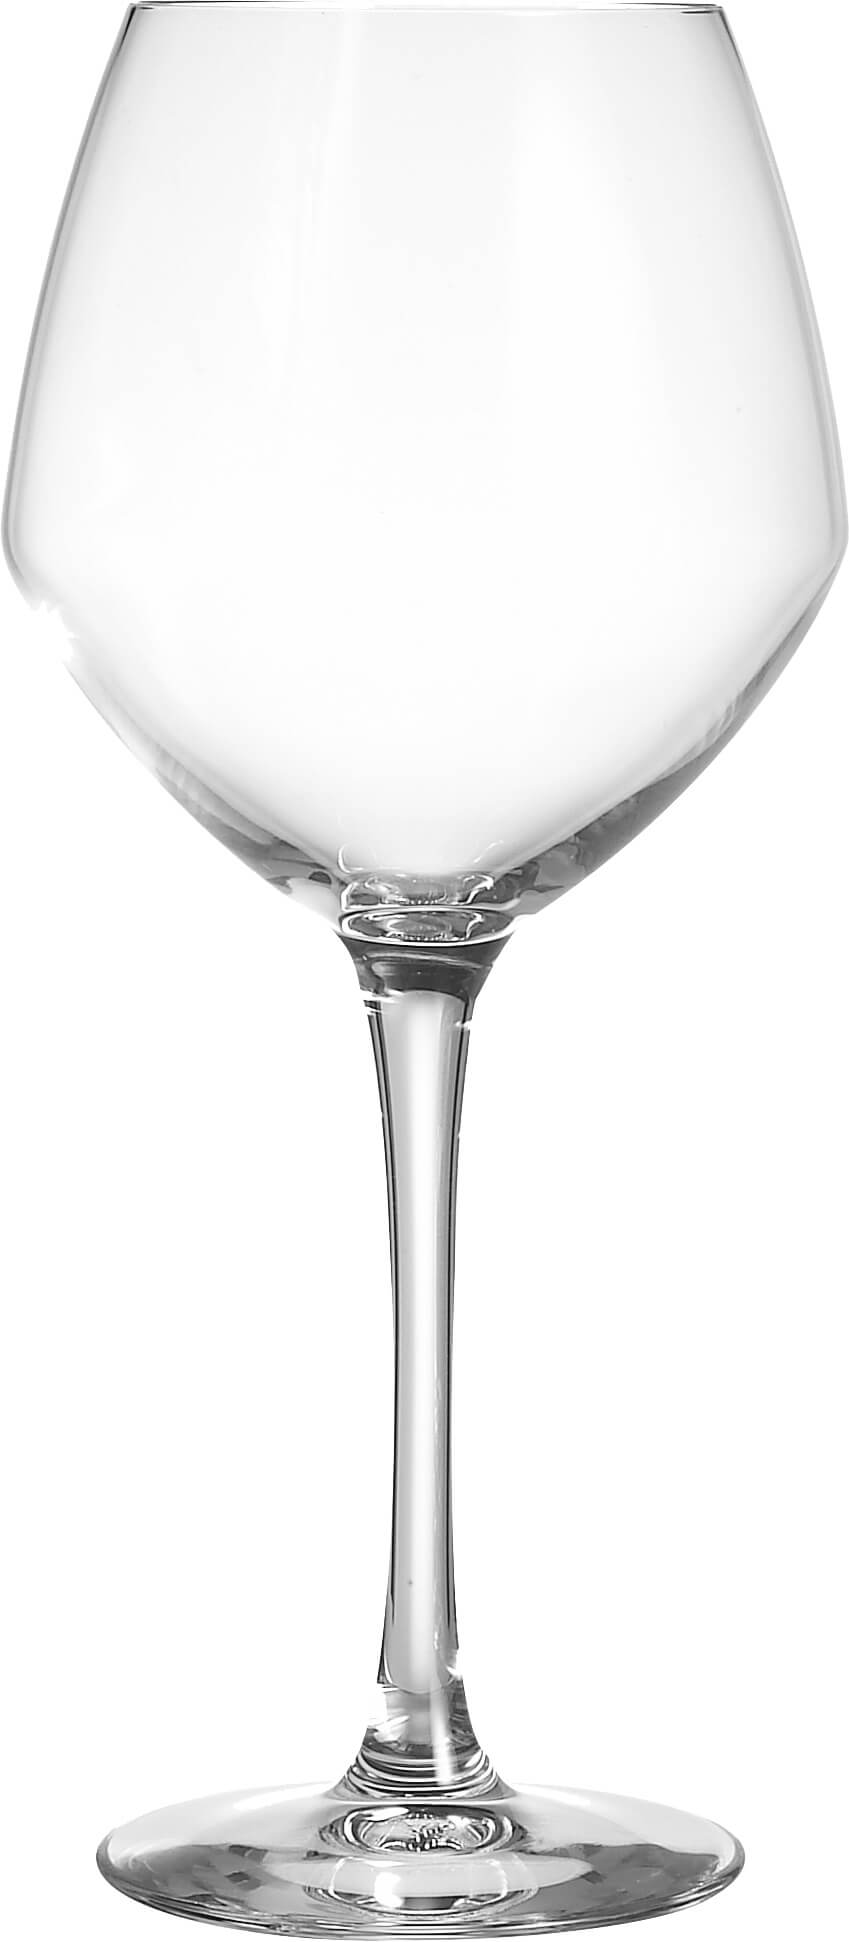 Vins Jeunes glass Cabernet, C&S - 470ml (6 pcs.)